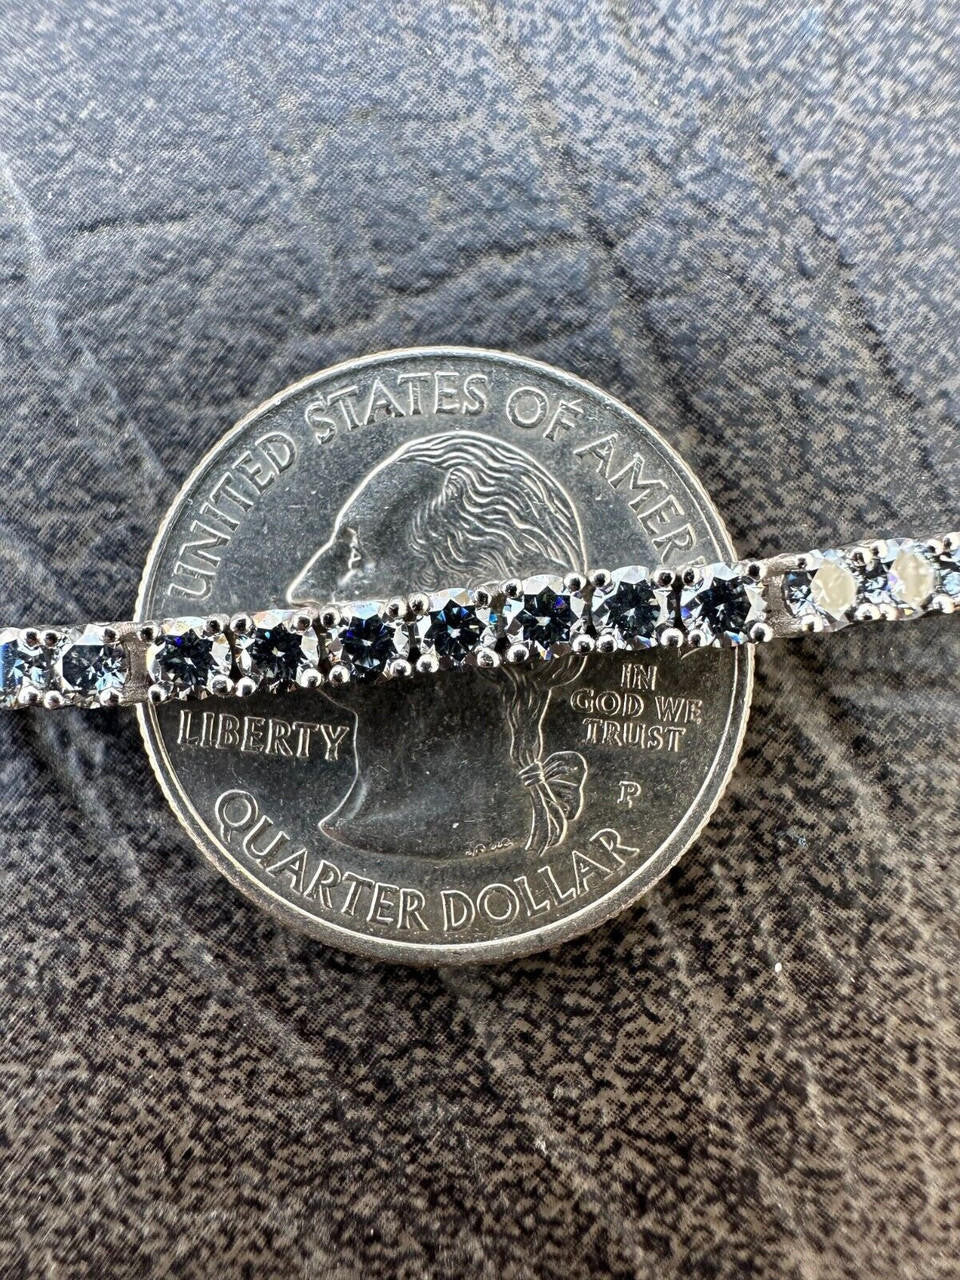 Iced Gray MOISSANITE Tennis Bracelet 925 Silver Pass Diamond Test (3mm-5mm)